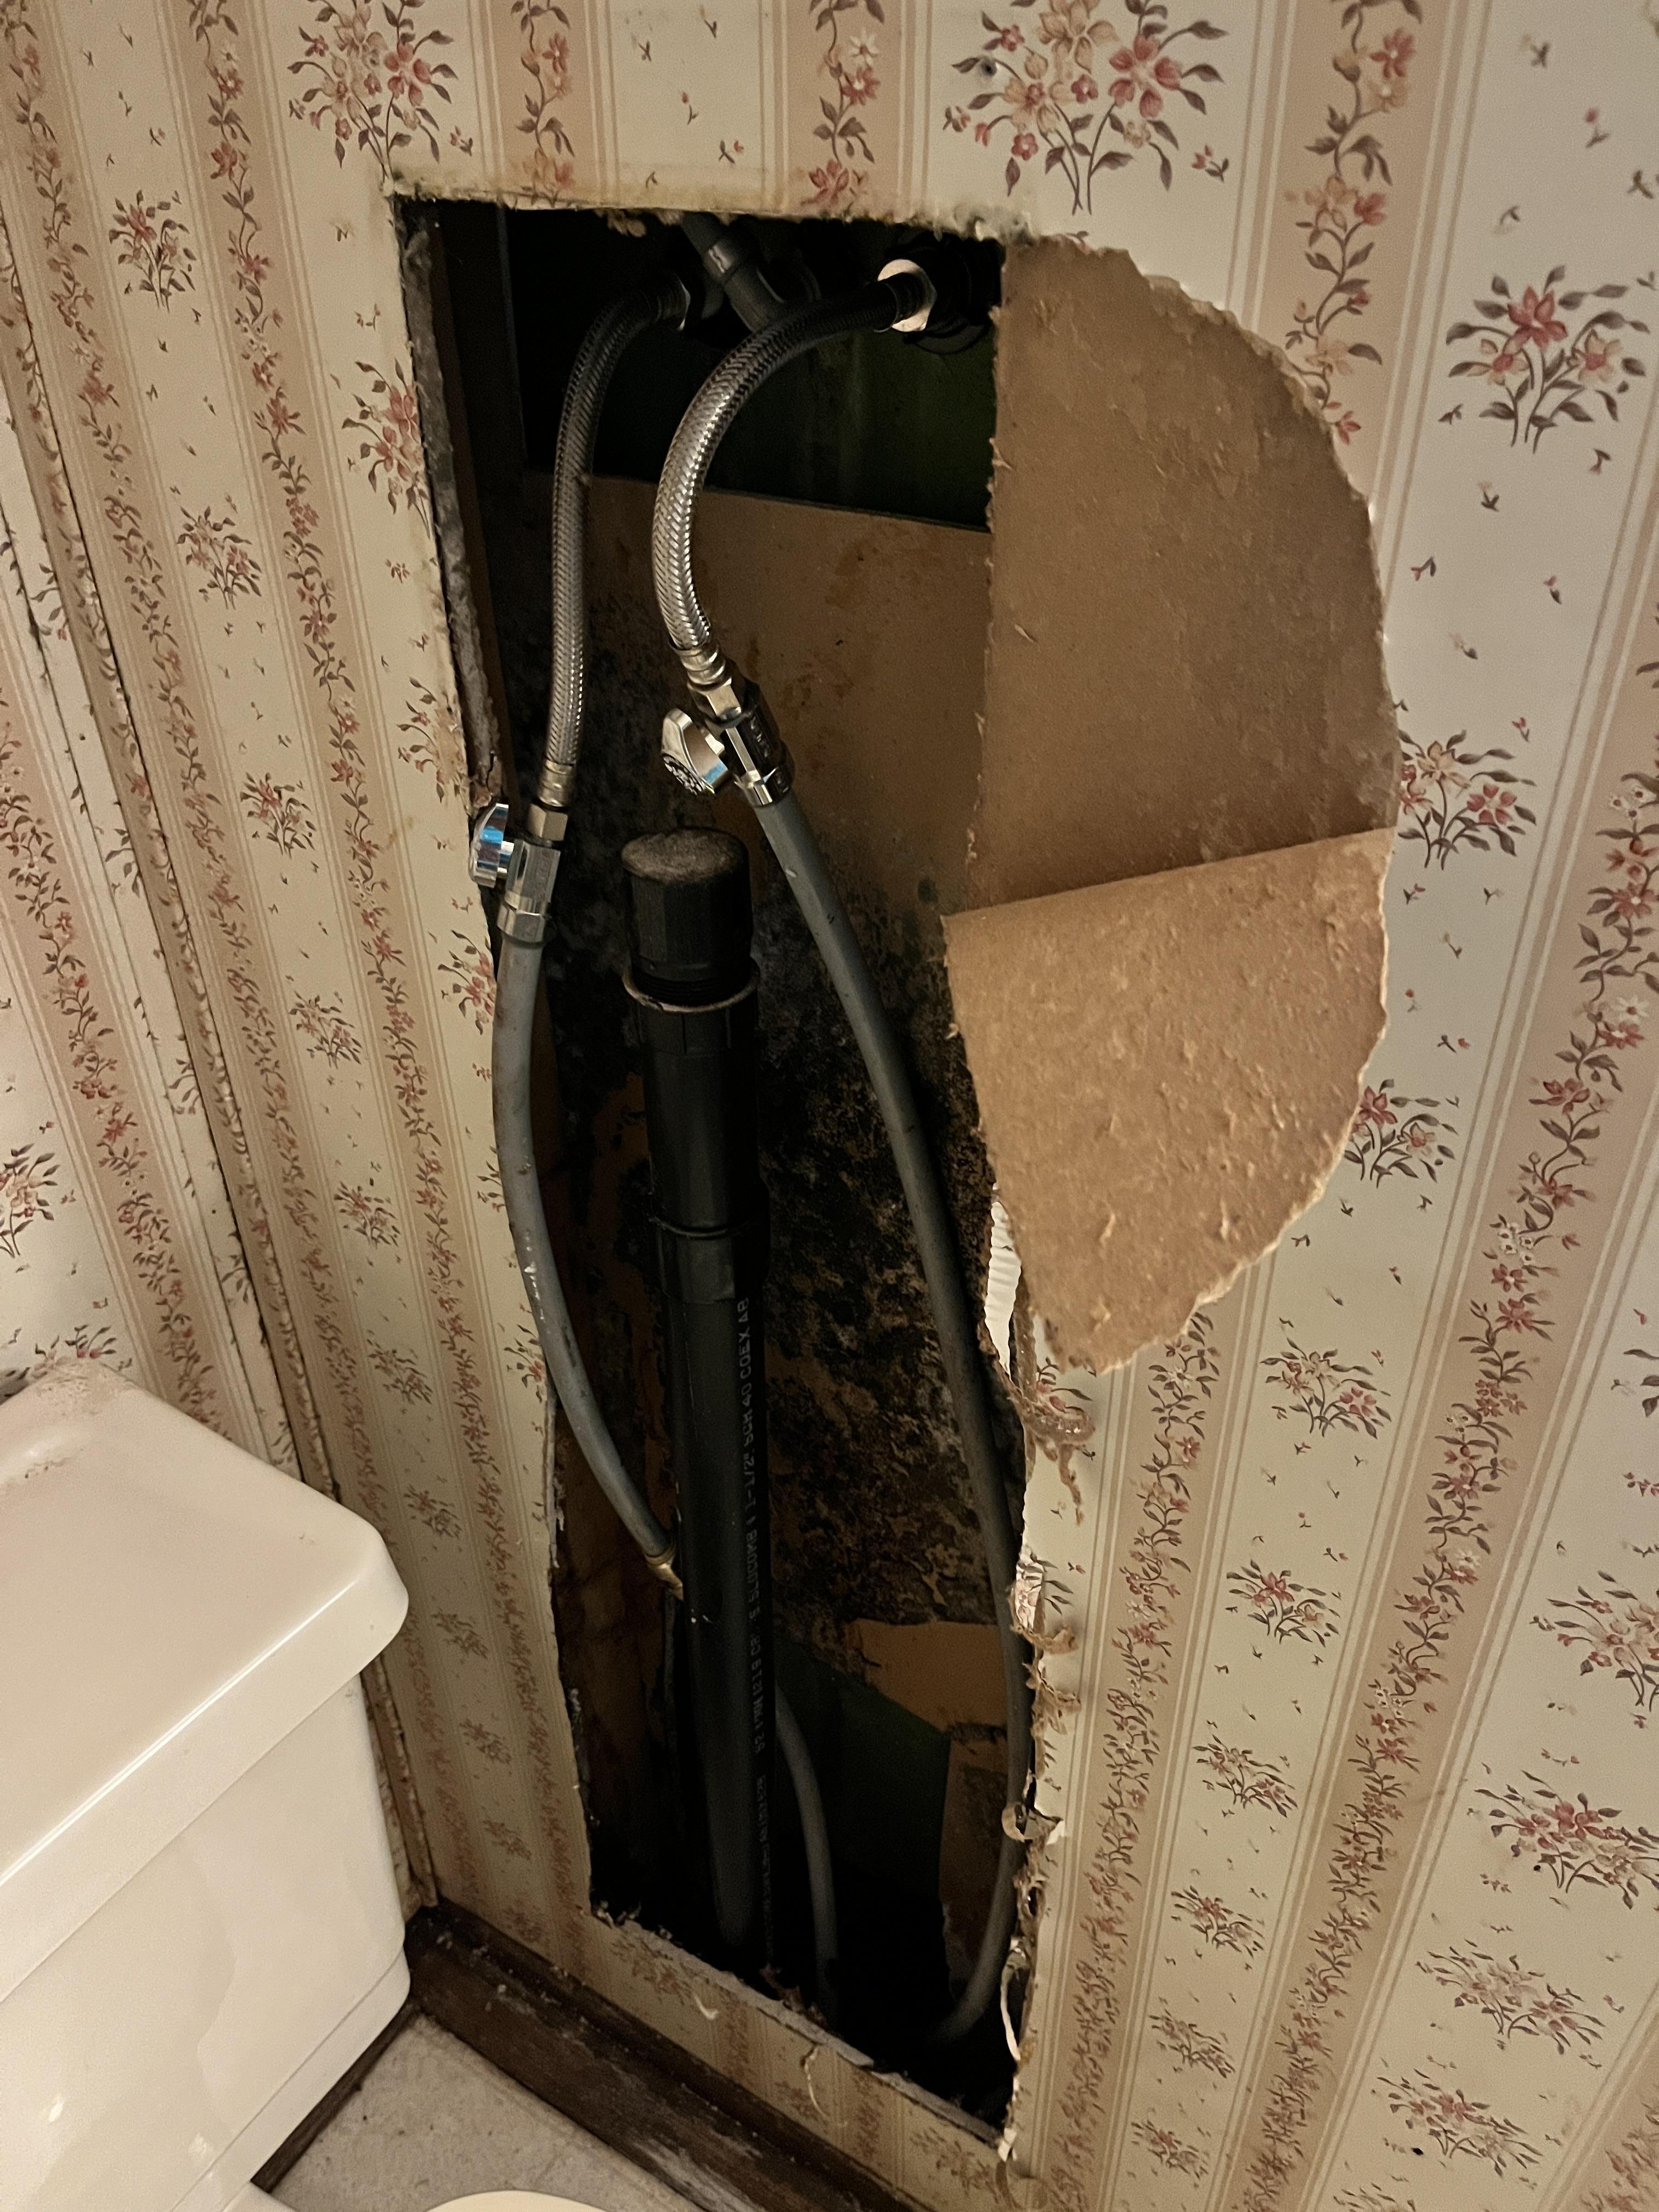 Broken water line in bathroom